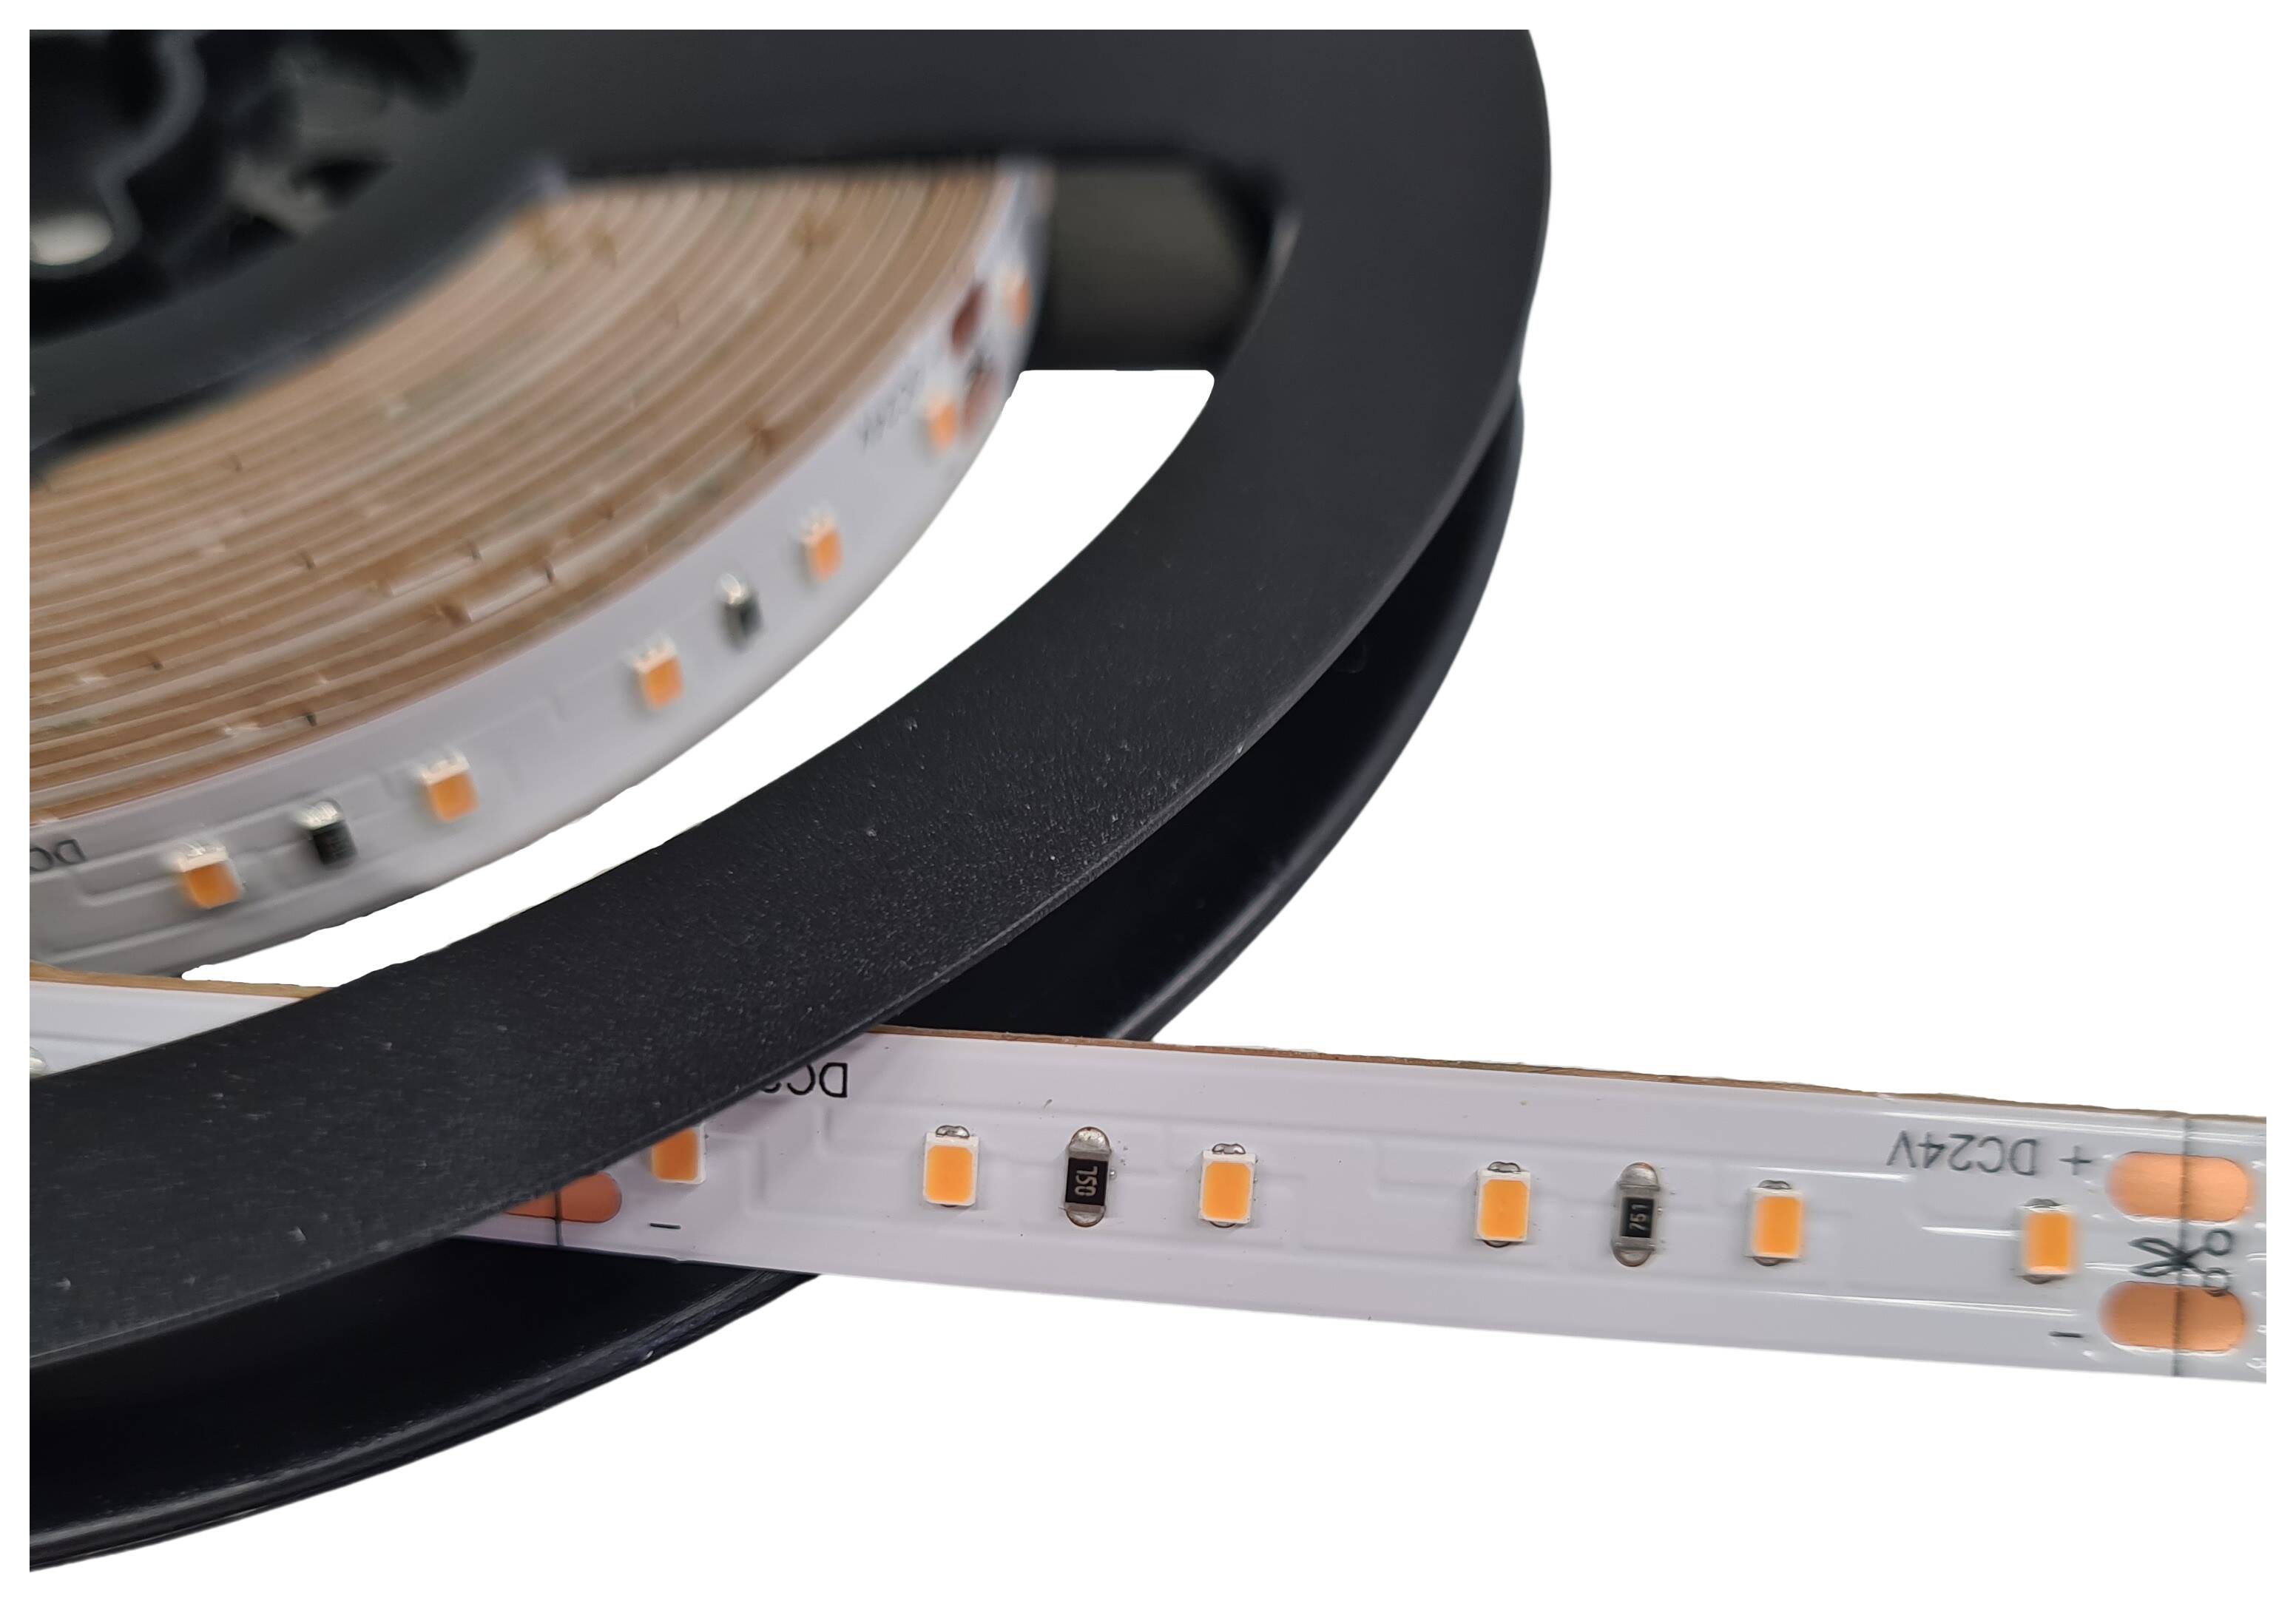 LED-Strip flexibel IP20 24V 4,8W/m 445lm/m 3000K RA>90 120 LEDs/m rückseitig 3M Tape Rolle à 5 m